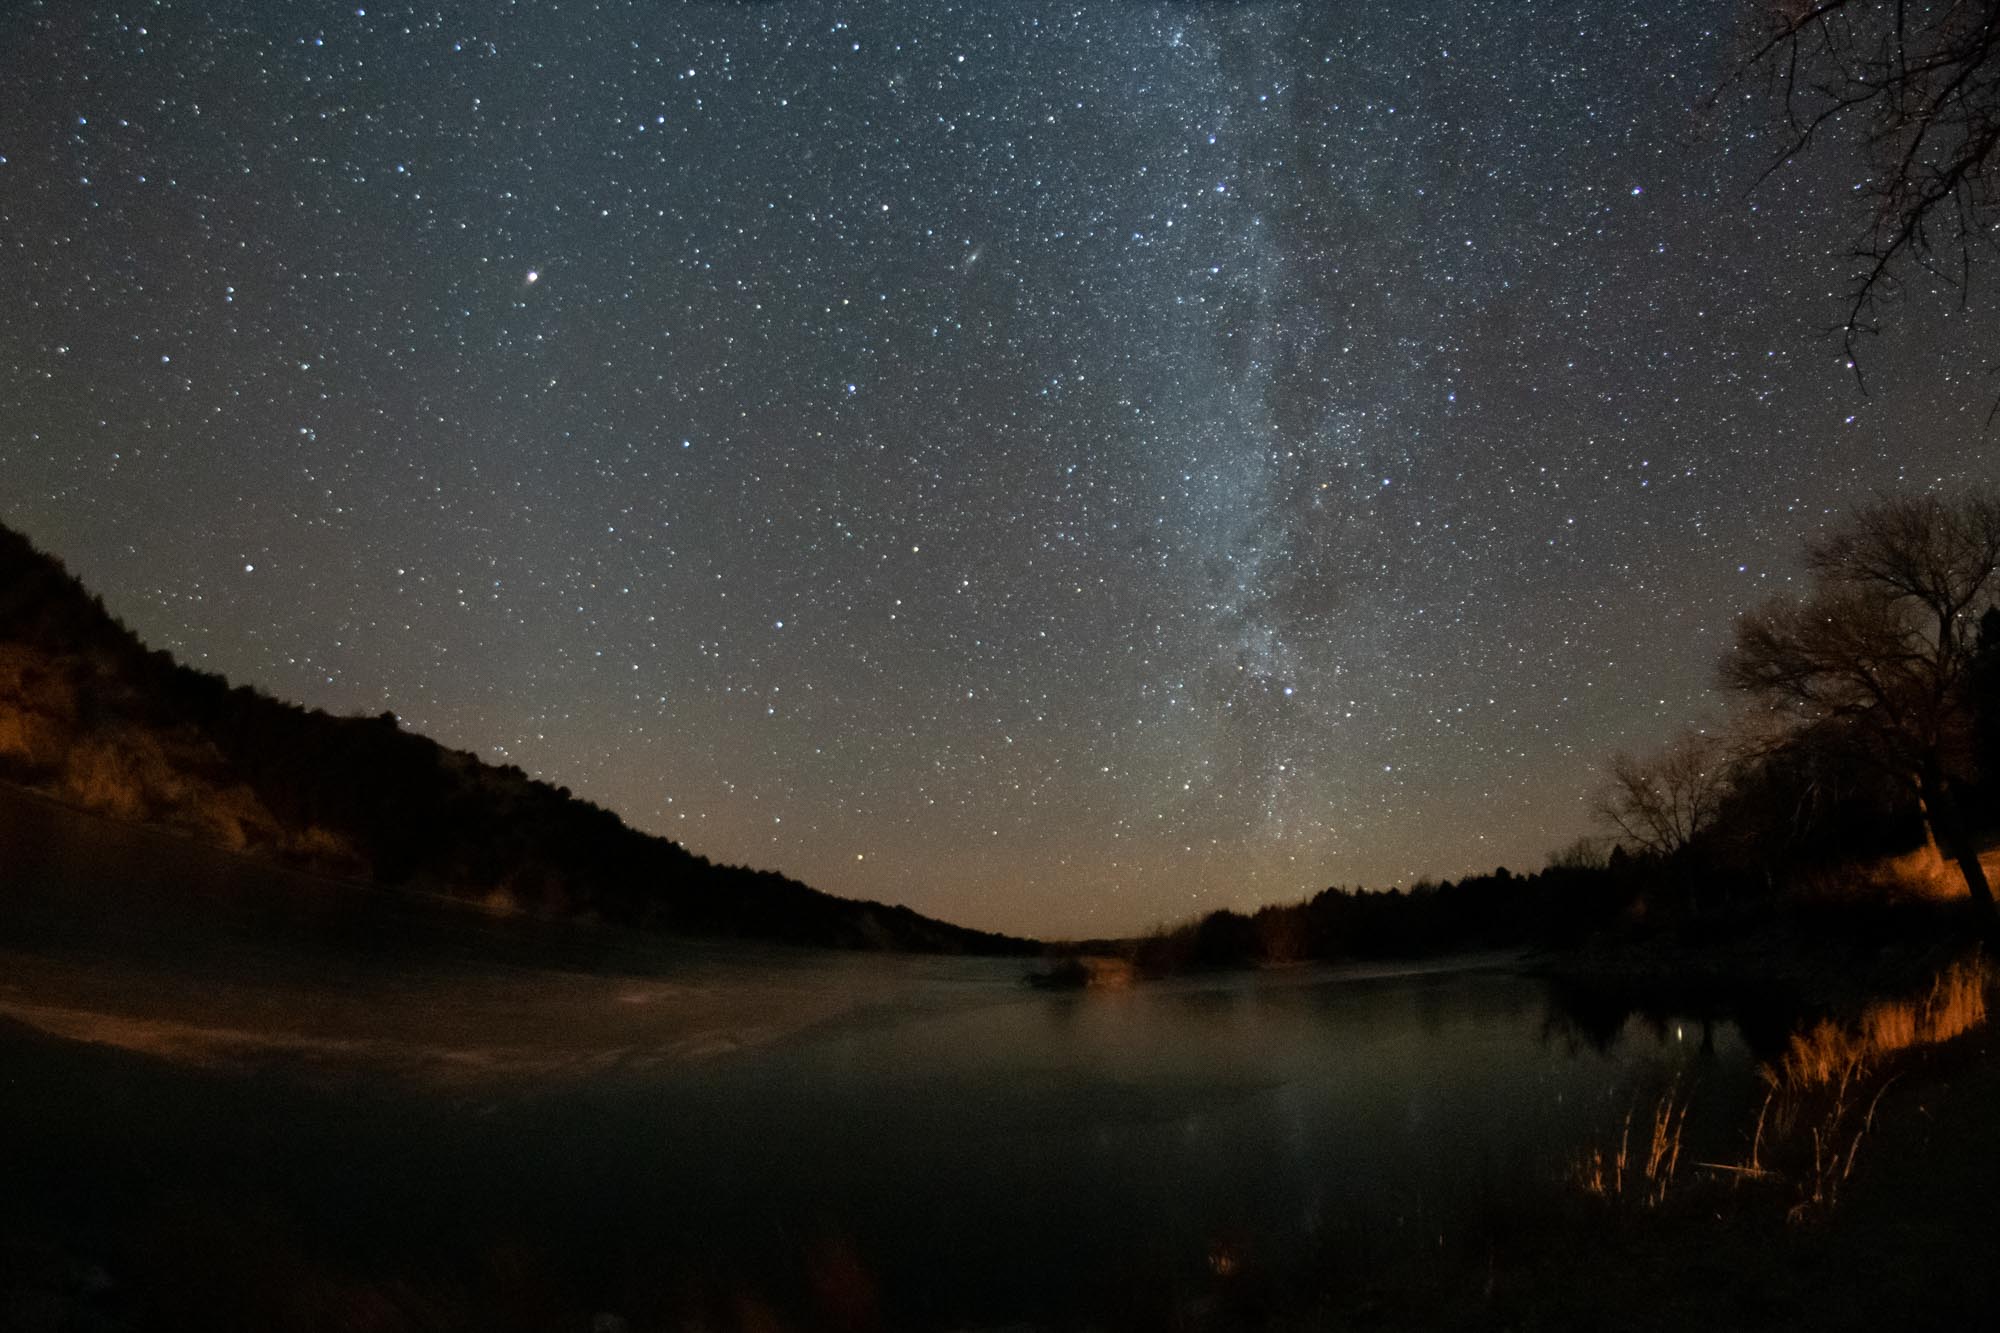 Stars/Milky Way over Merritt Reservoir